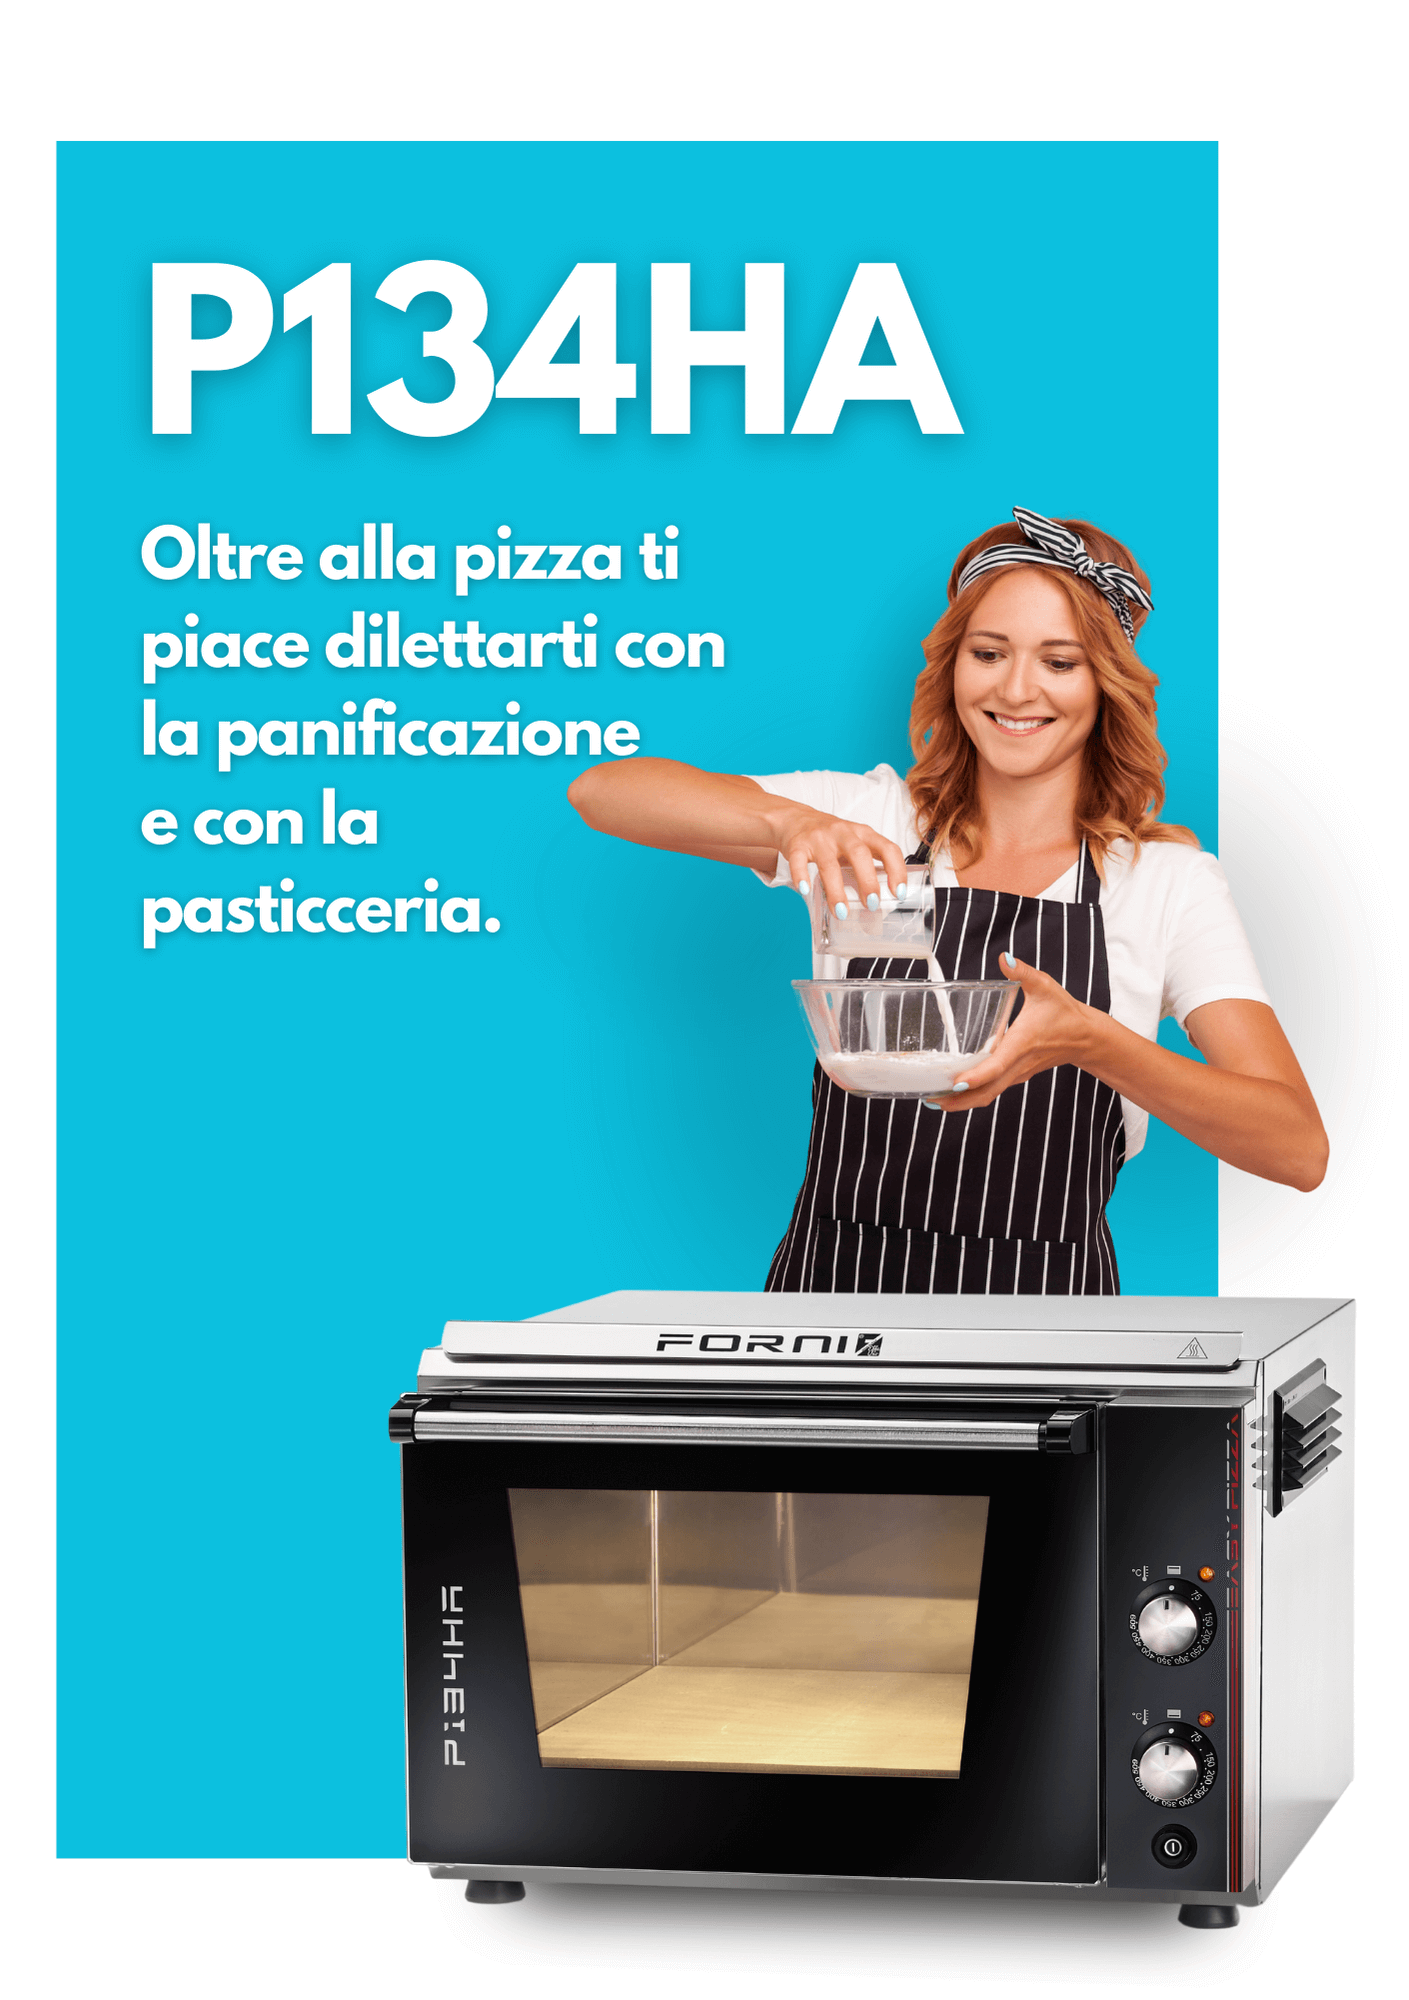 P134HA-effeuno-forni-professionali-pizza